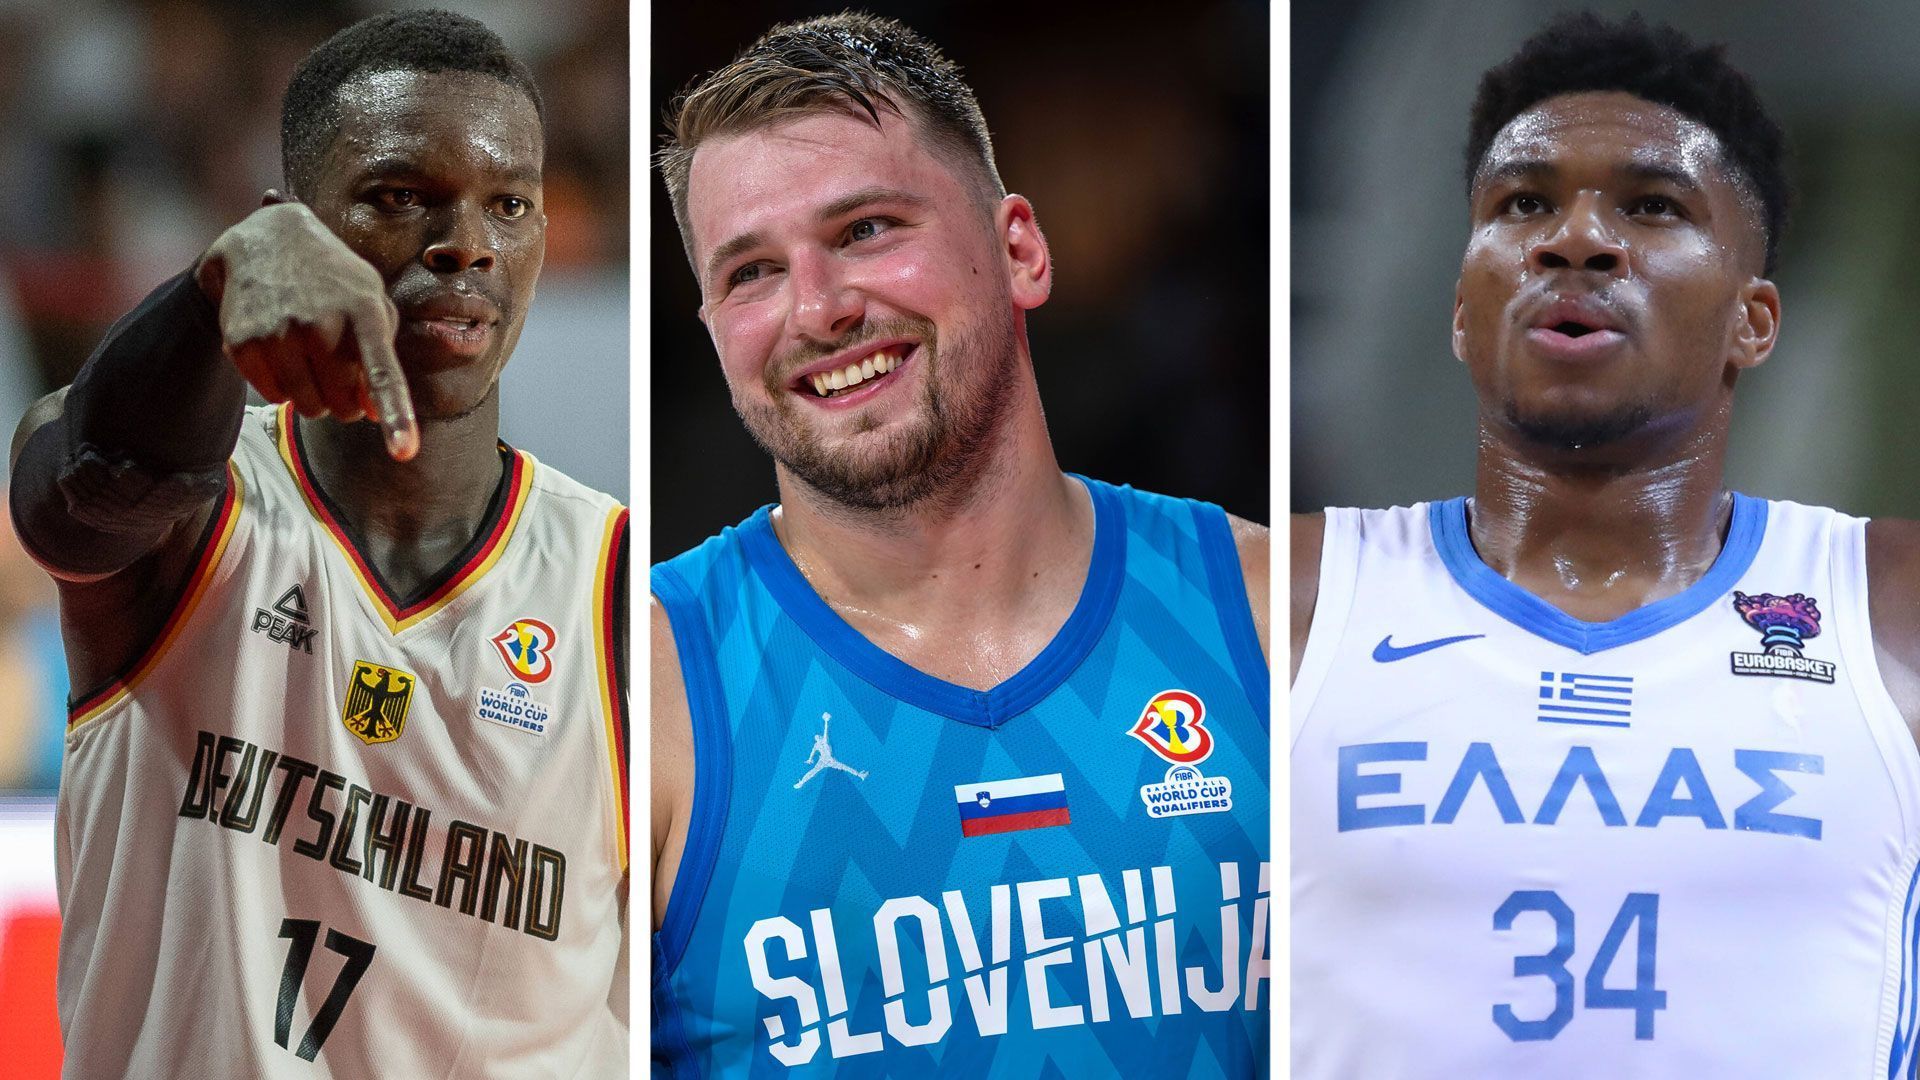 Basketball-EM NBA-Starpower bei der Eurobasket